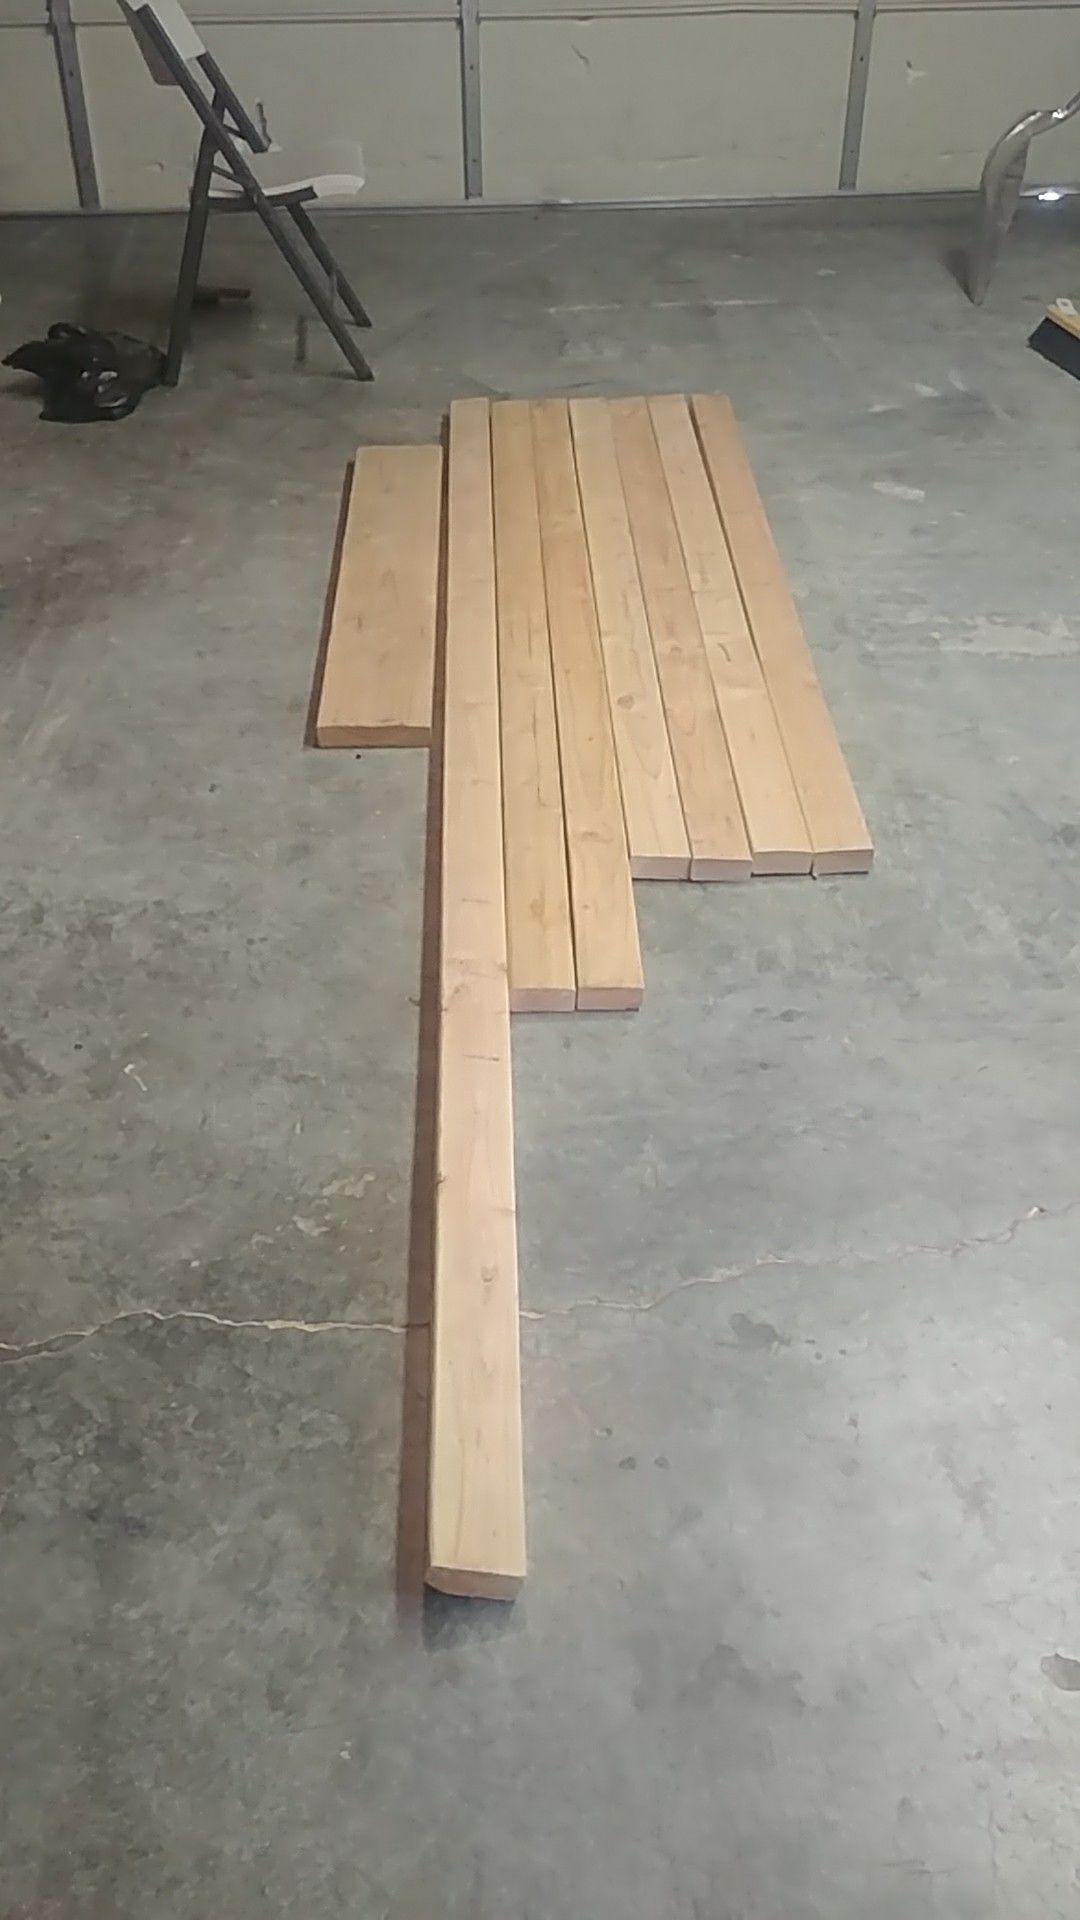 2x4 wood